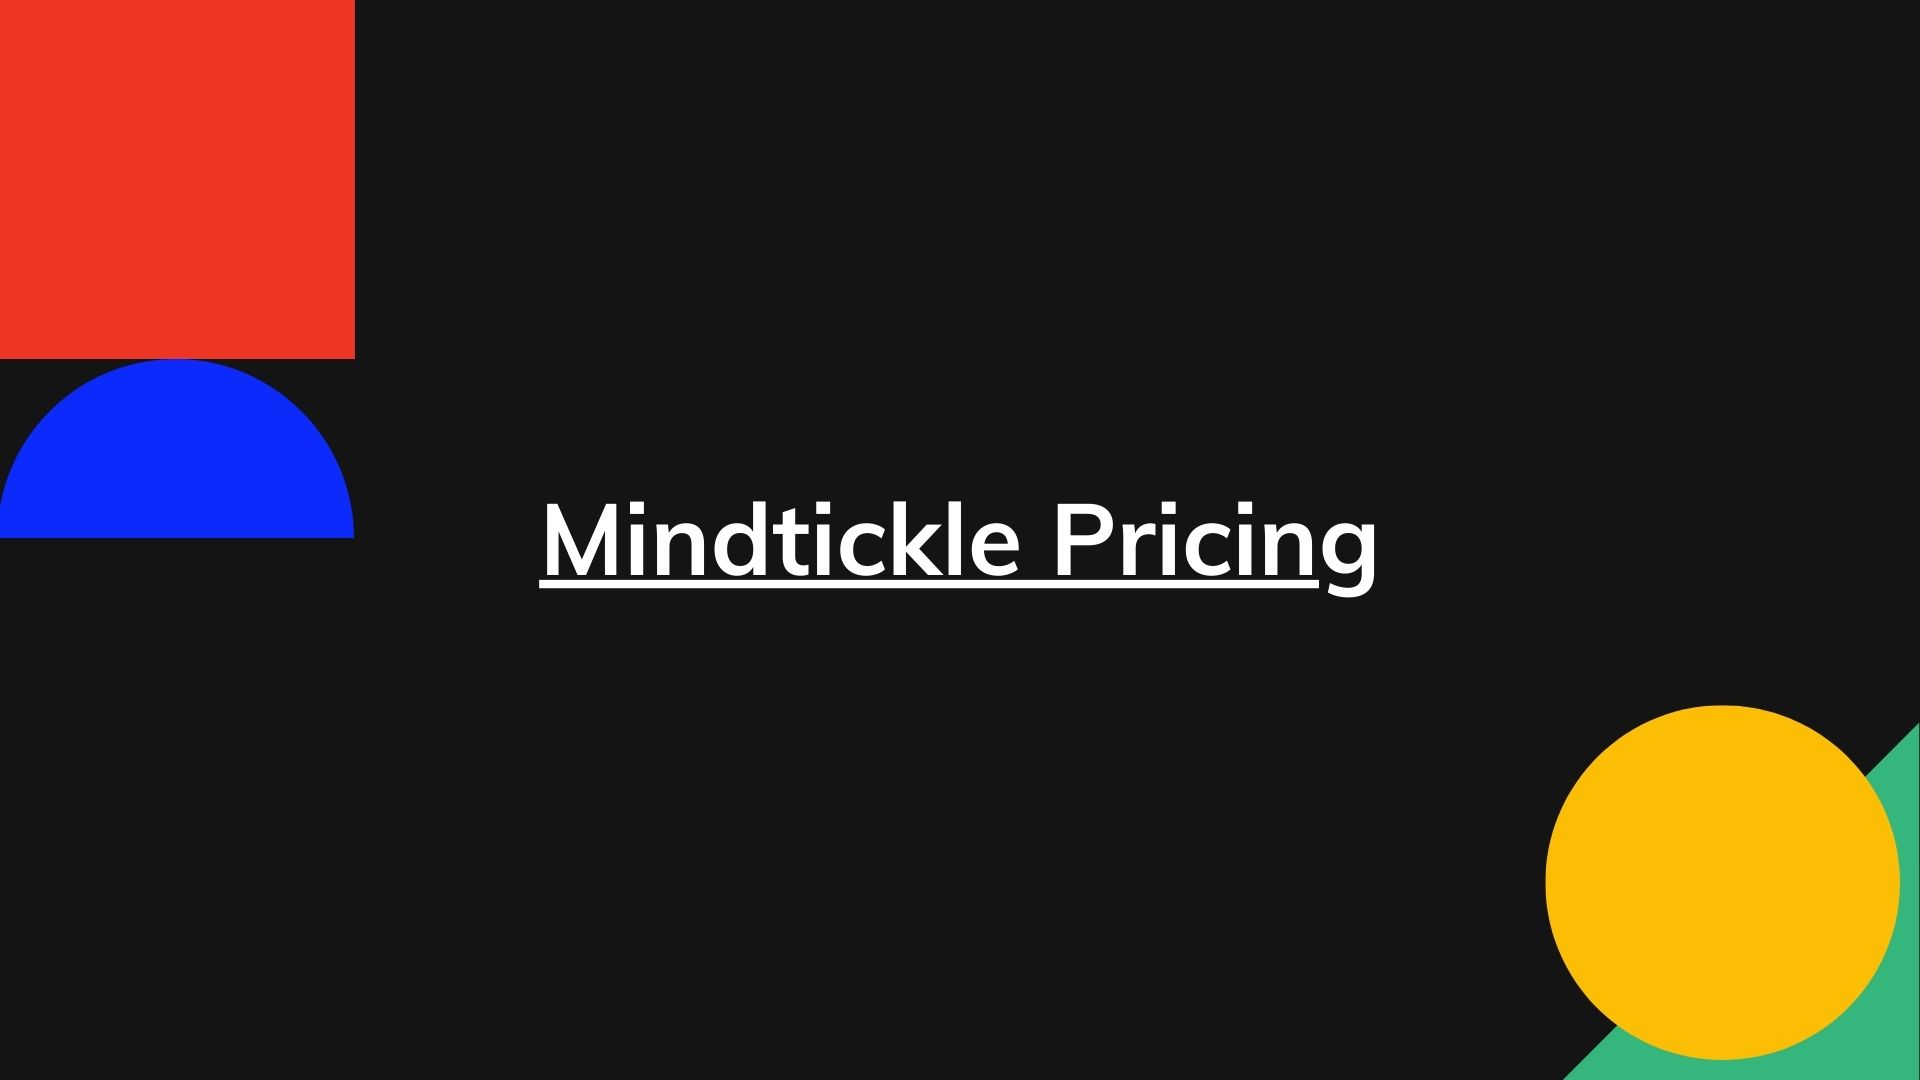 Mindtickle pricing